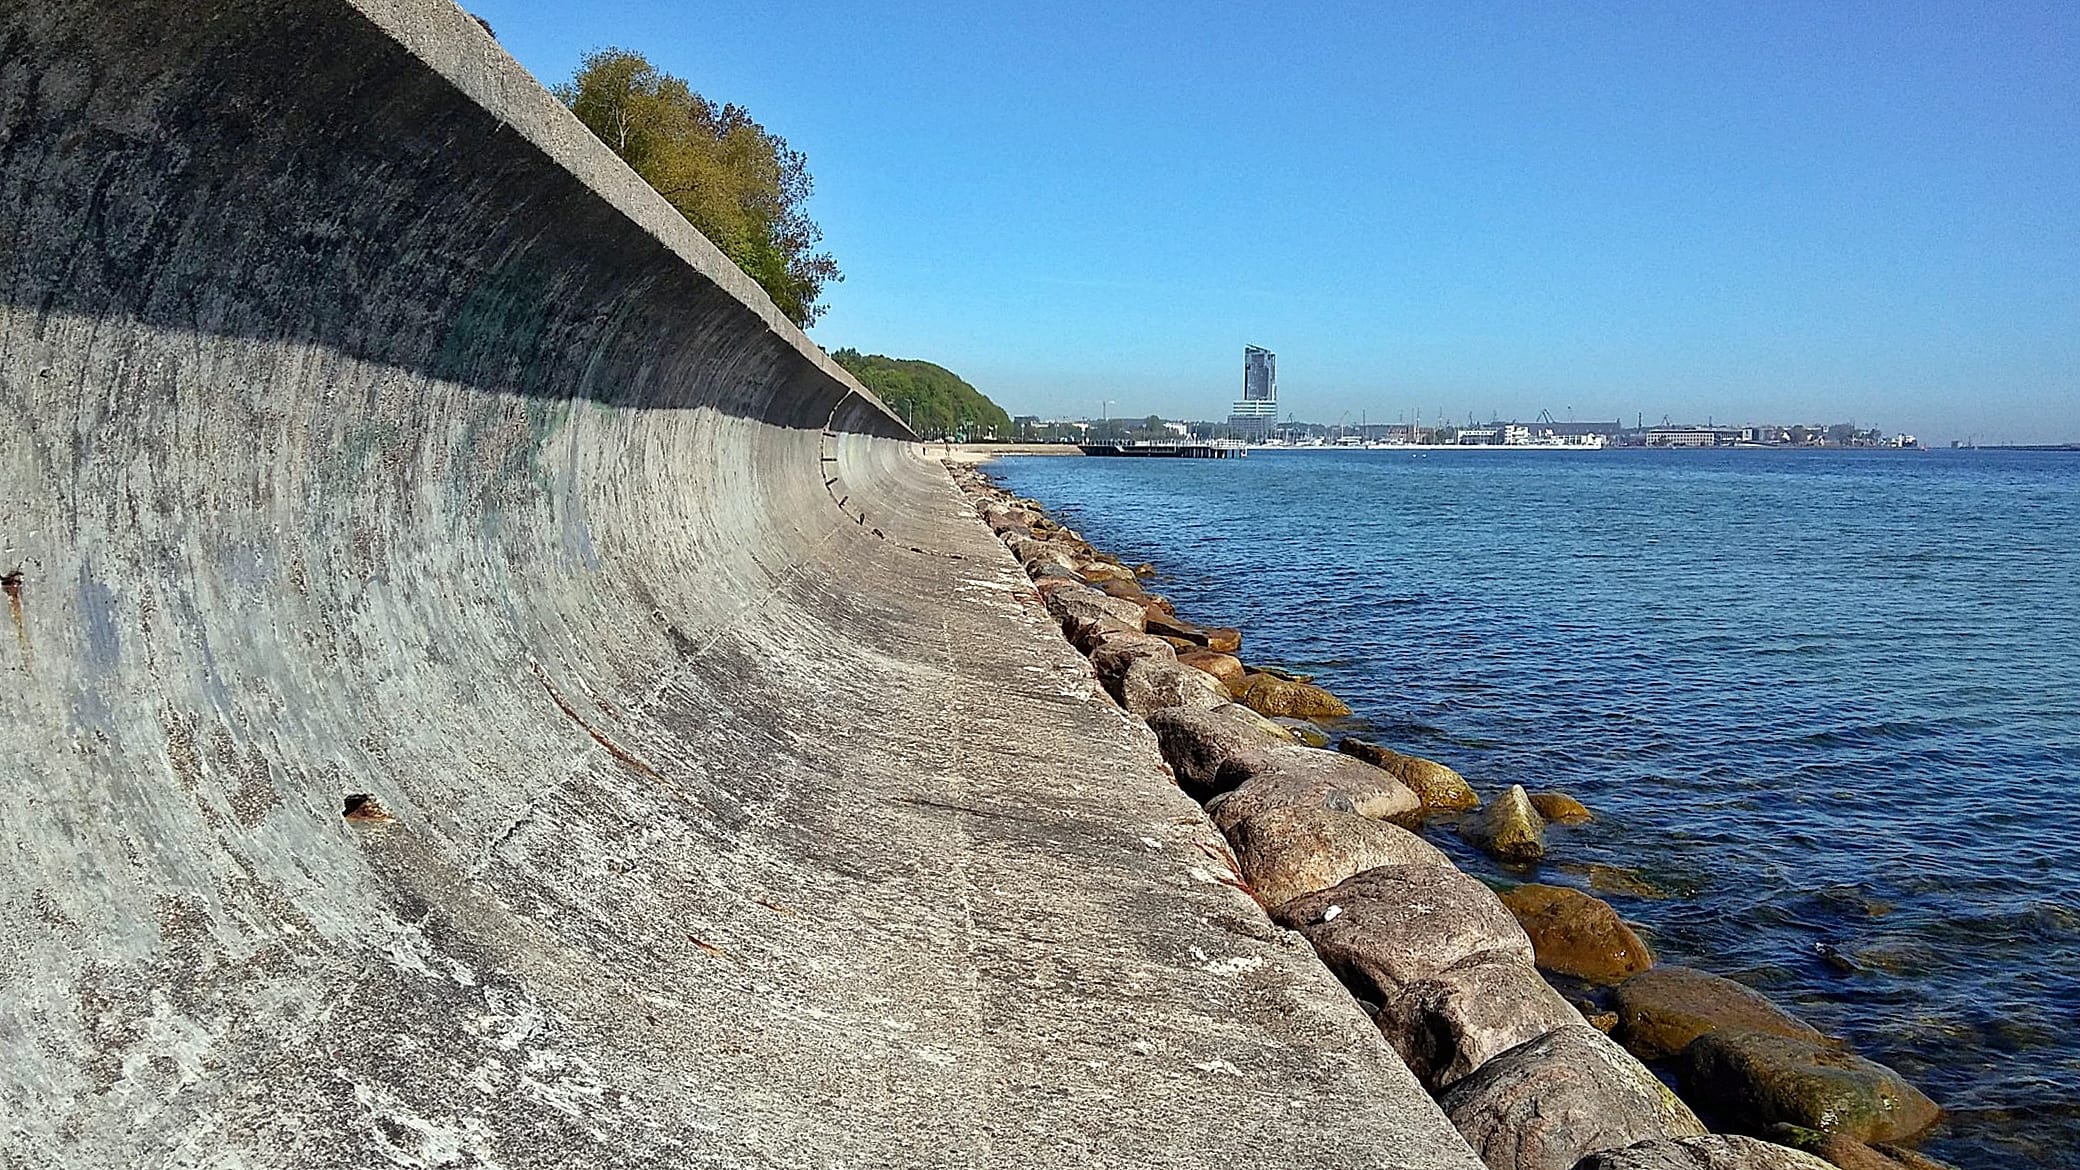 Zdjęcie umocnienia brzegowego w postaci betonowej opaski brzegowej z odbijaczem fal posadowionej na palach, zrobione od strony morza w kierunku północnym.